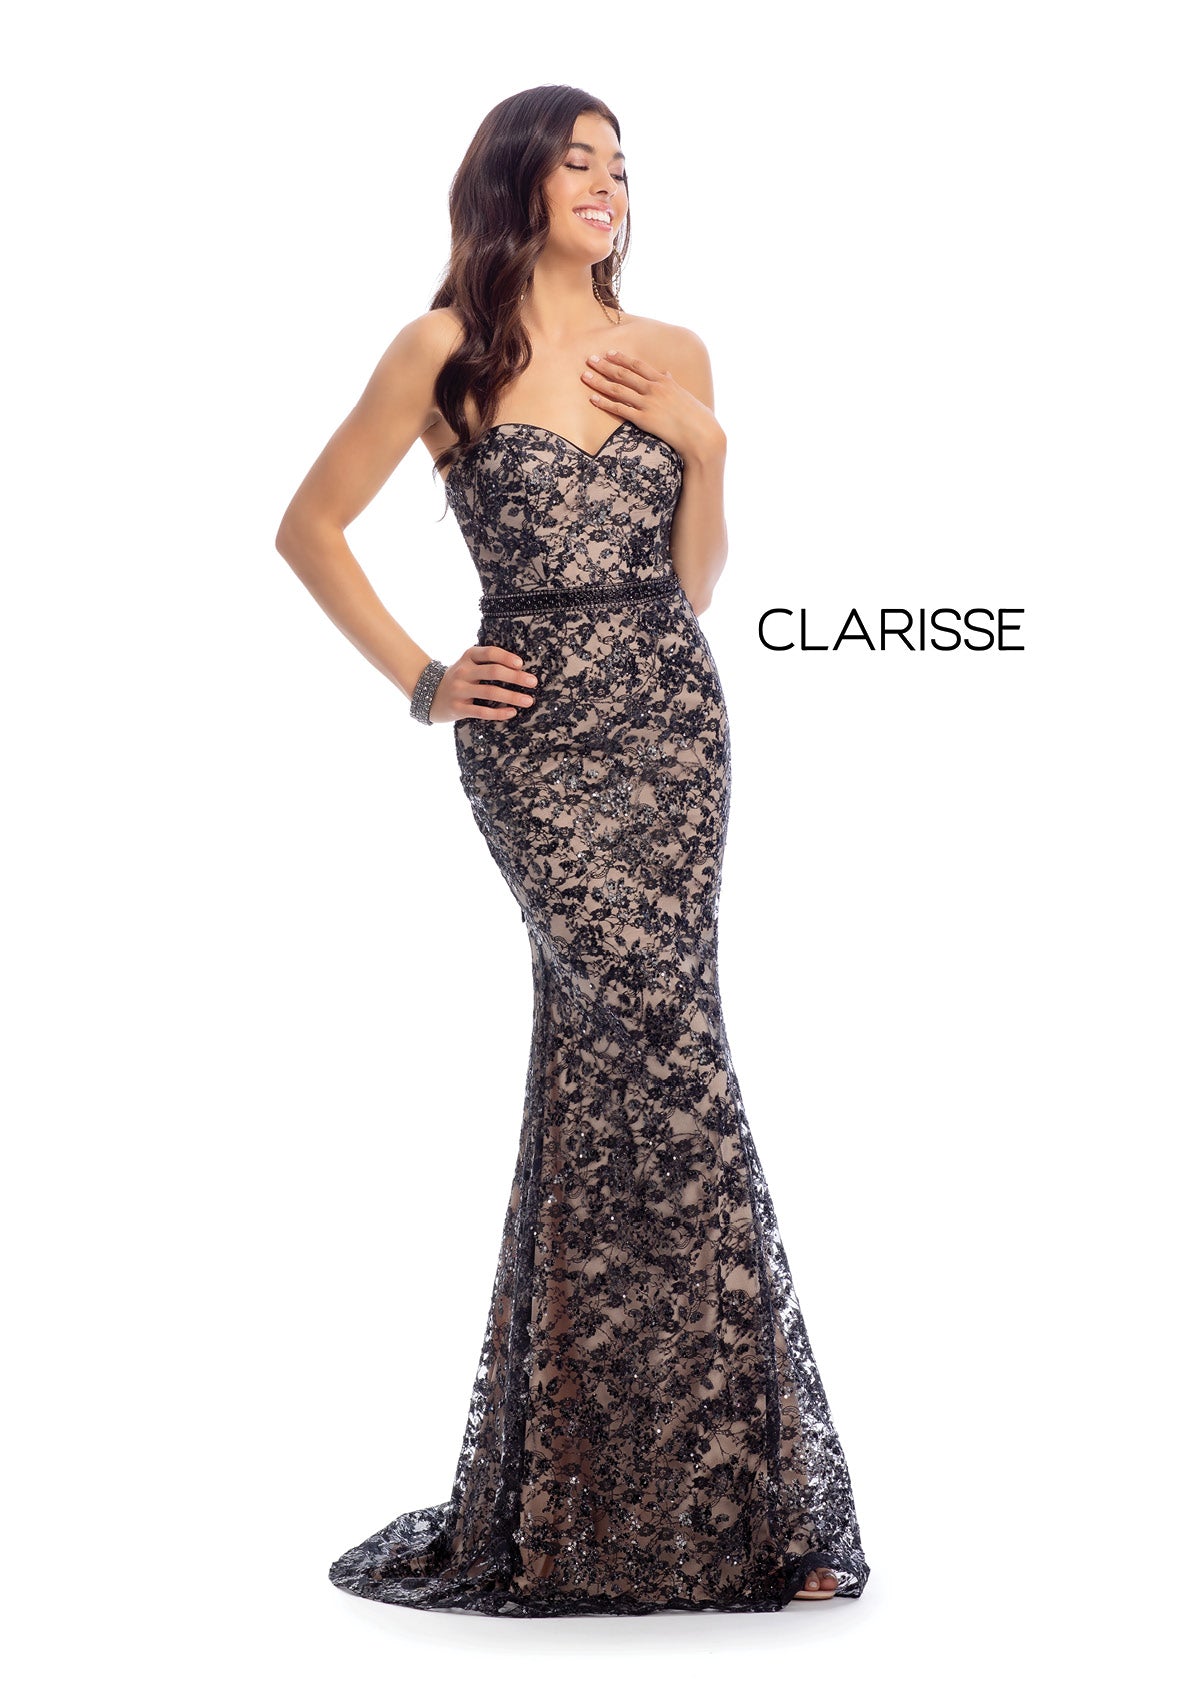 Style #8017 Clarisse